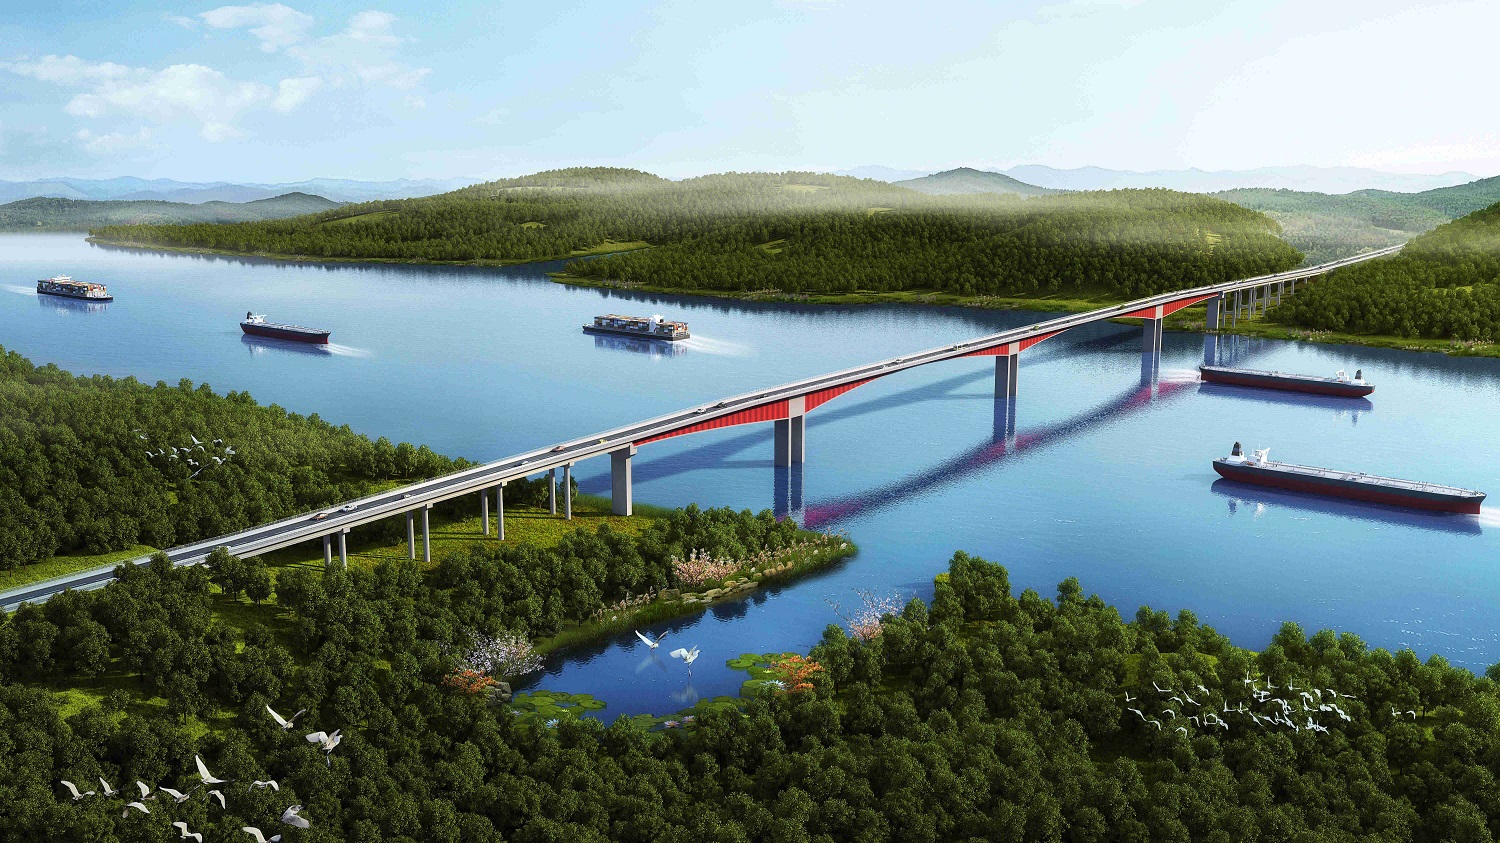 广西路建集团二公司承建的“世界最大跨径波形钢腹板组合连续刚构桥”飞龙大桥效果图.jpg